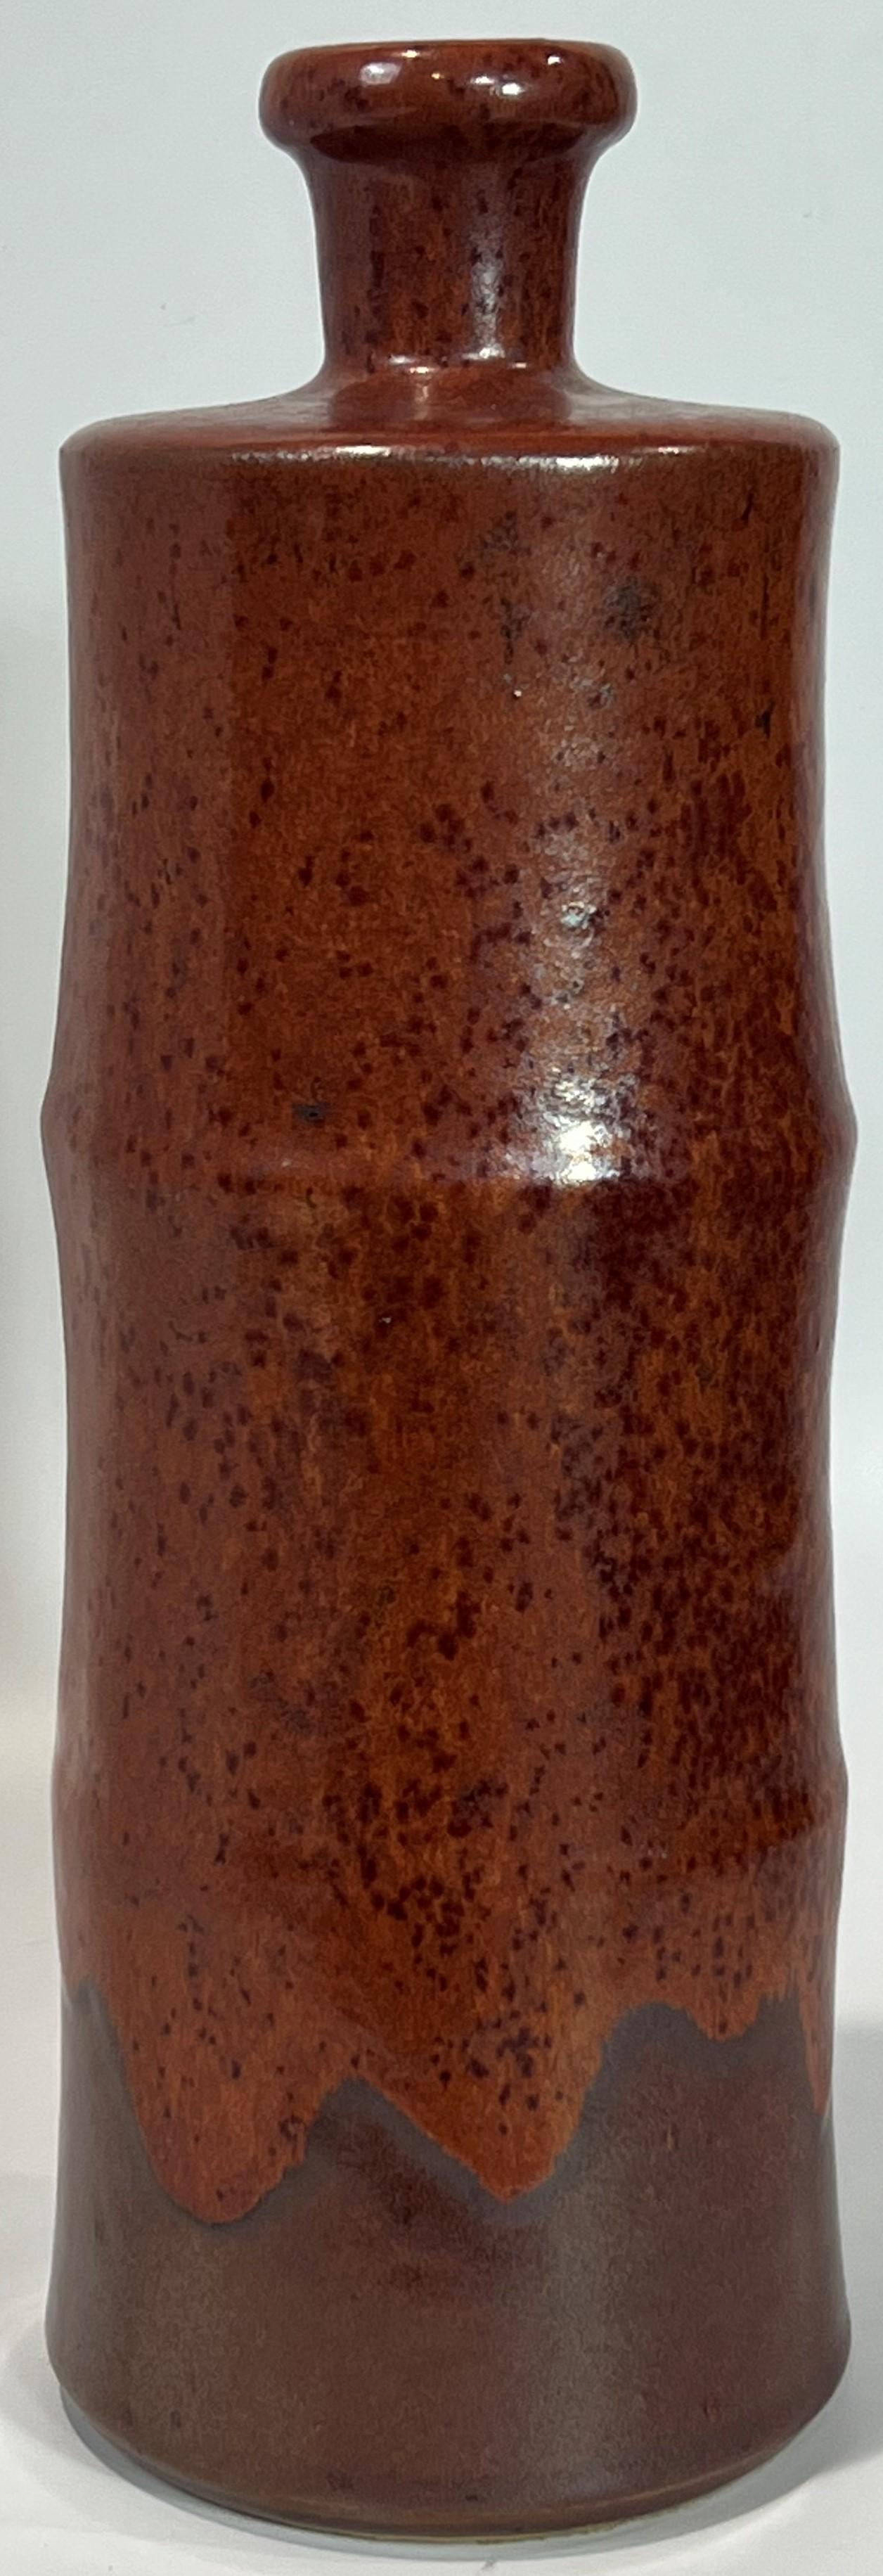 Horst Kerstan Bottle Vase Large Fantastic Brown Micro-Crystalline over Brown 1